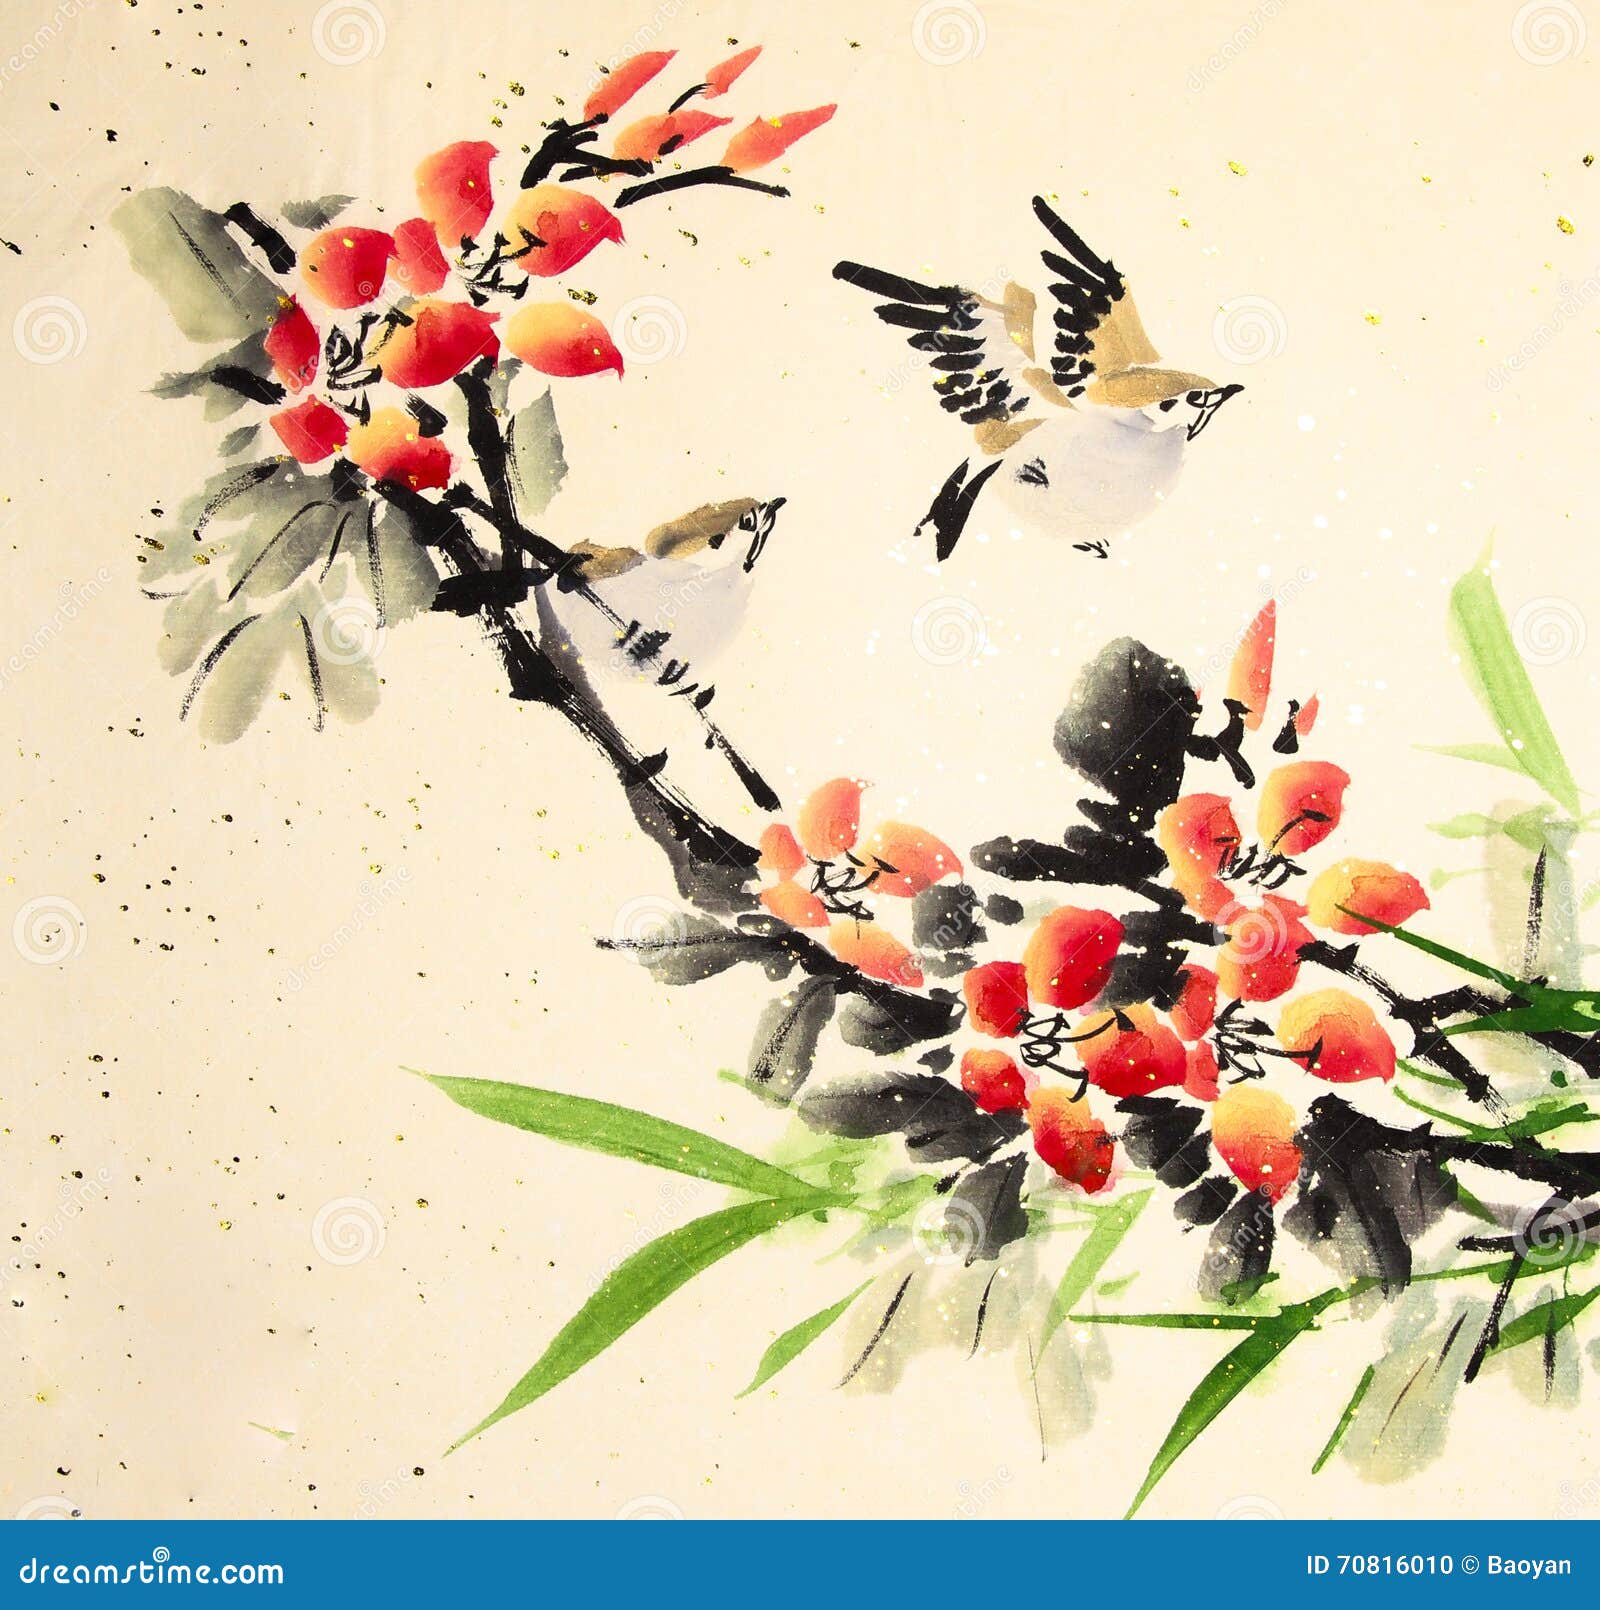 16 птичек на китайском. Птицы в китайском стиле. Рисунки птиц в китайском стиле. Художник Zeng Xiao Lian птицы и цветы. Китайские птички картинки.